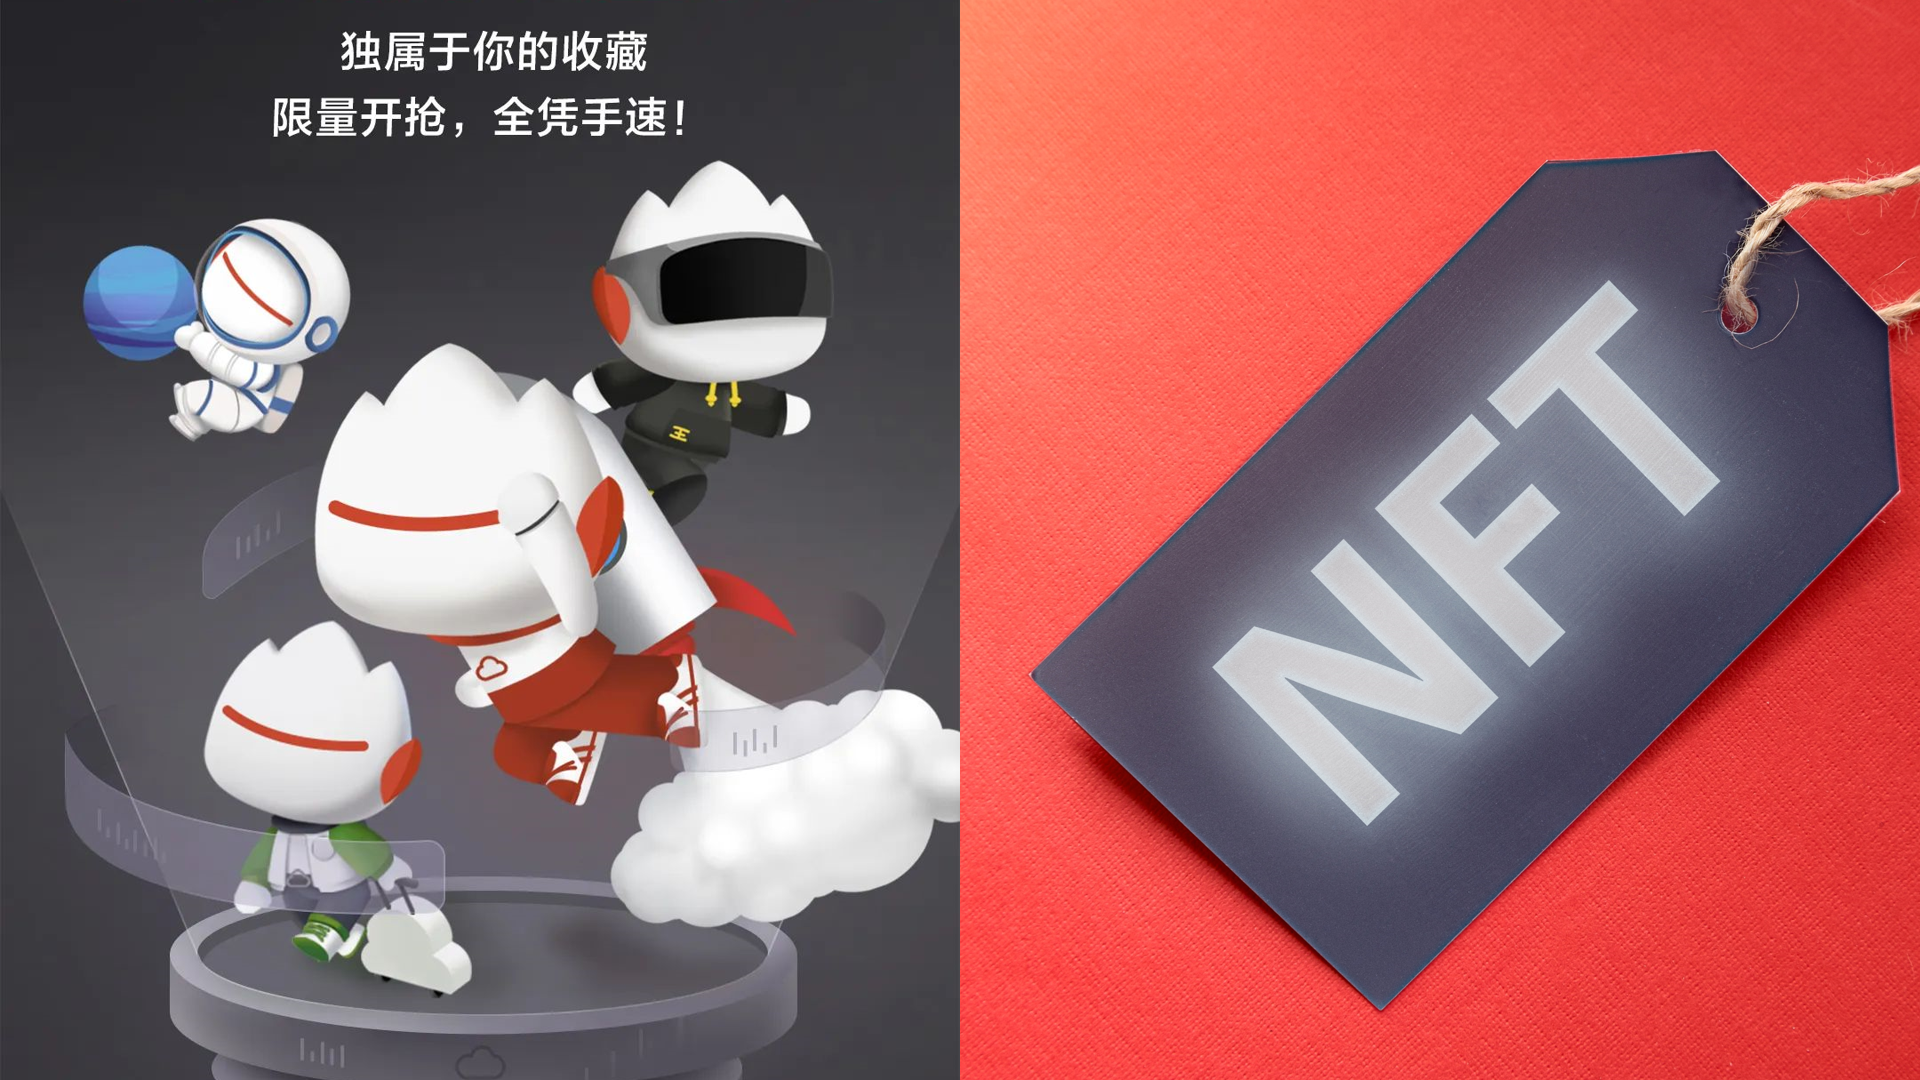 Huawei, NFT, Chinese tech giant Huawei debuts NFT